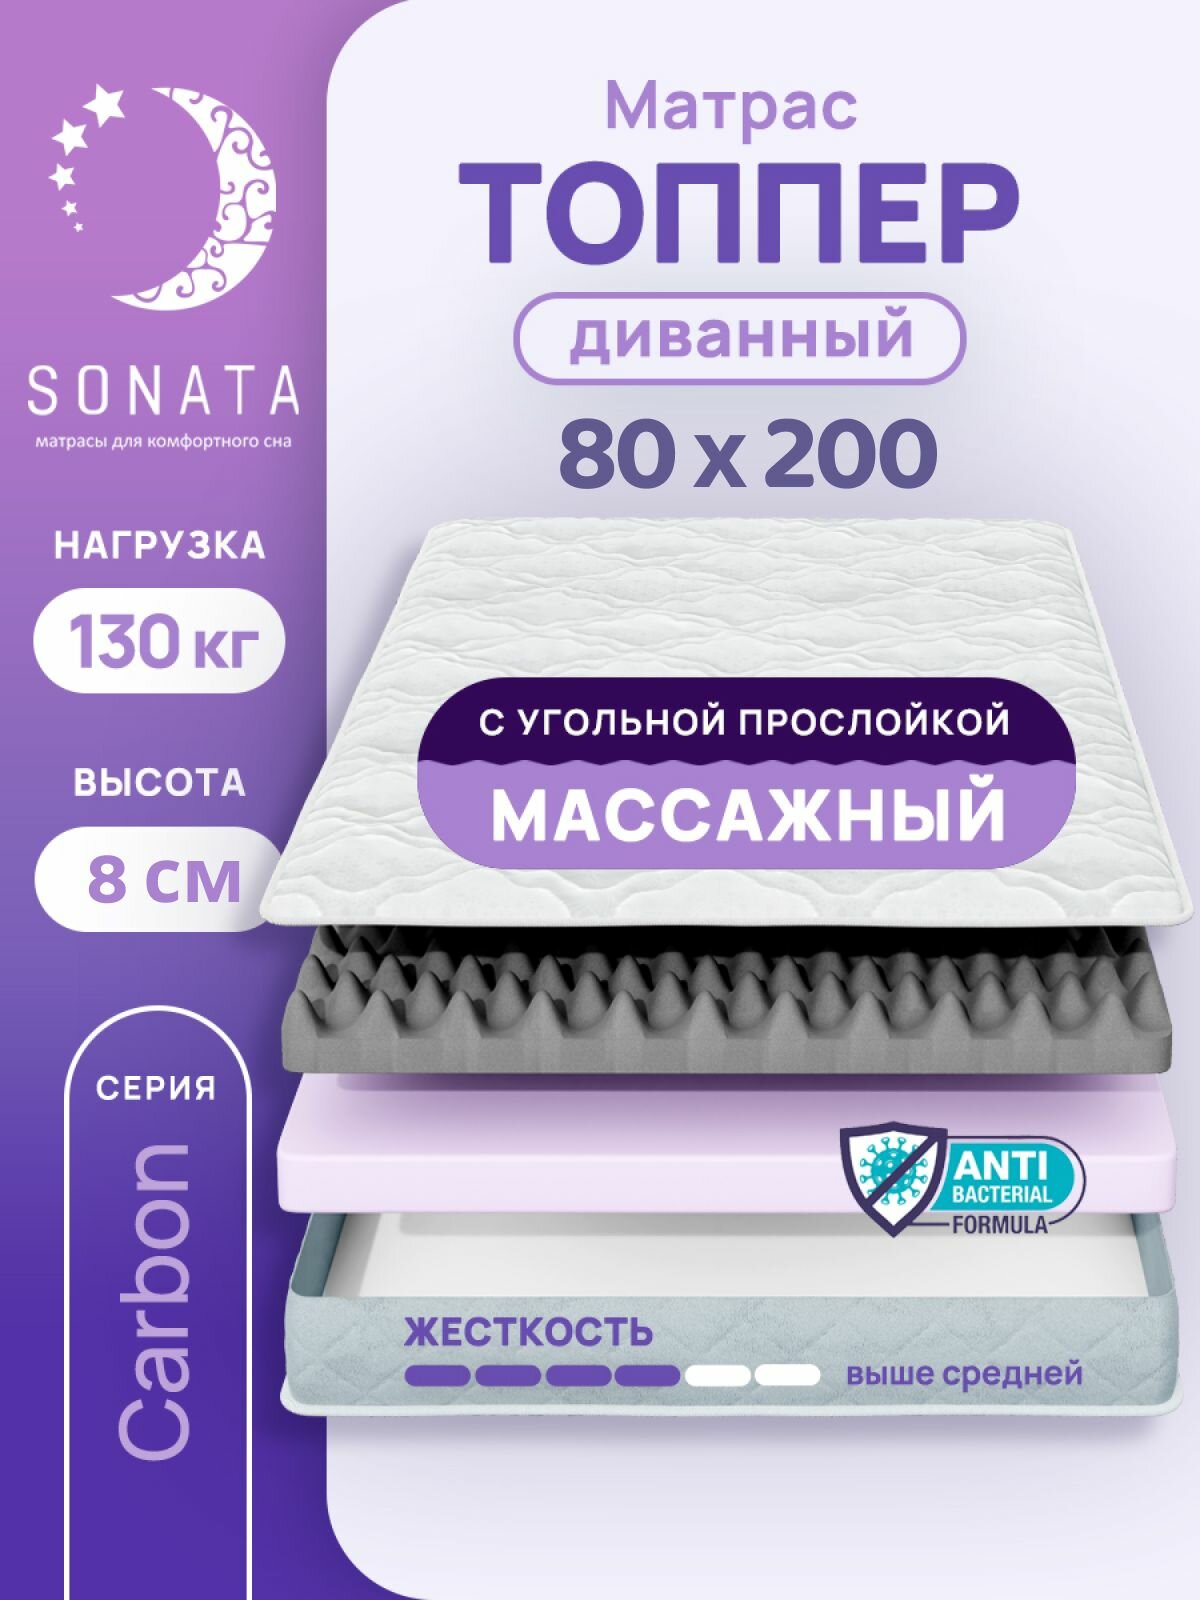 Топпер матрас 80х190 см SONATA ортопедический беспружинный односпальный тонкий матрац для дивана кровати высота 8 см с массажным эффектом